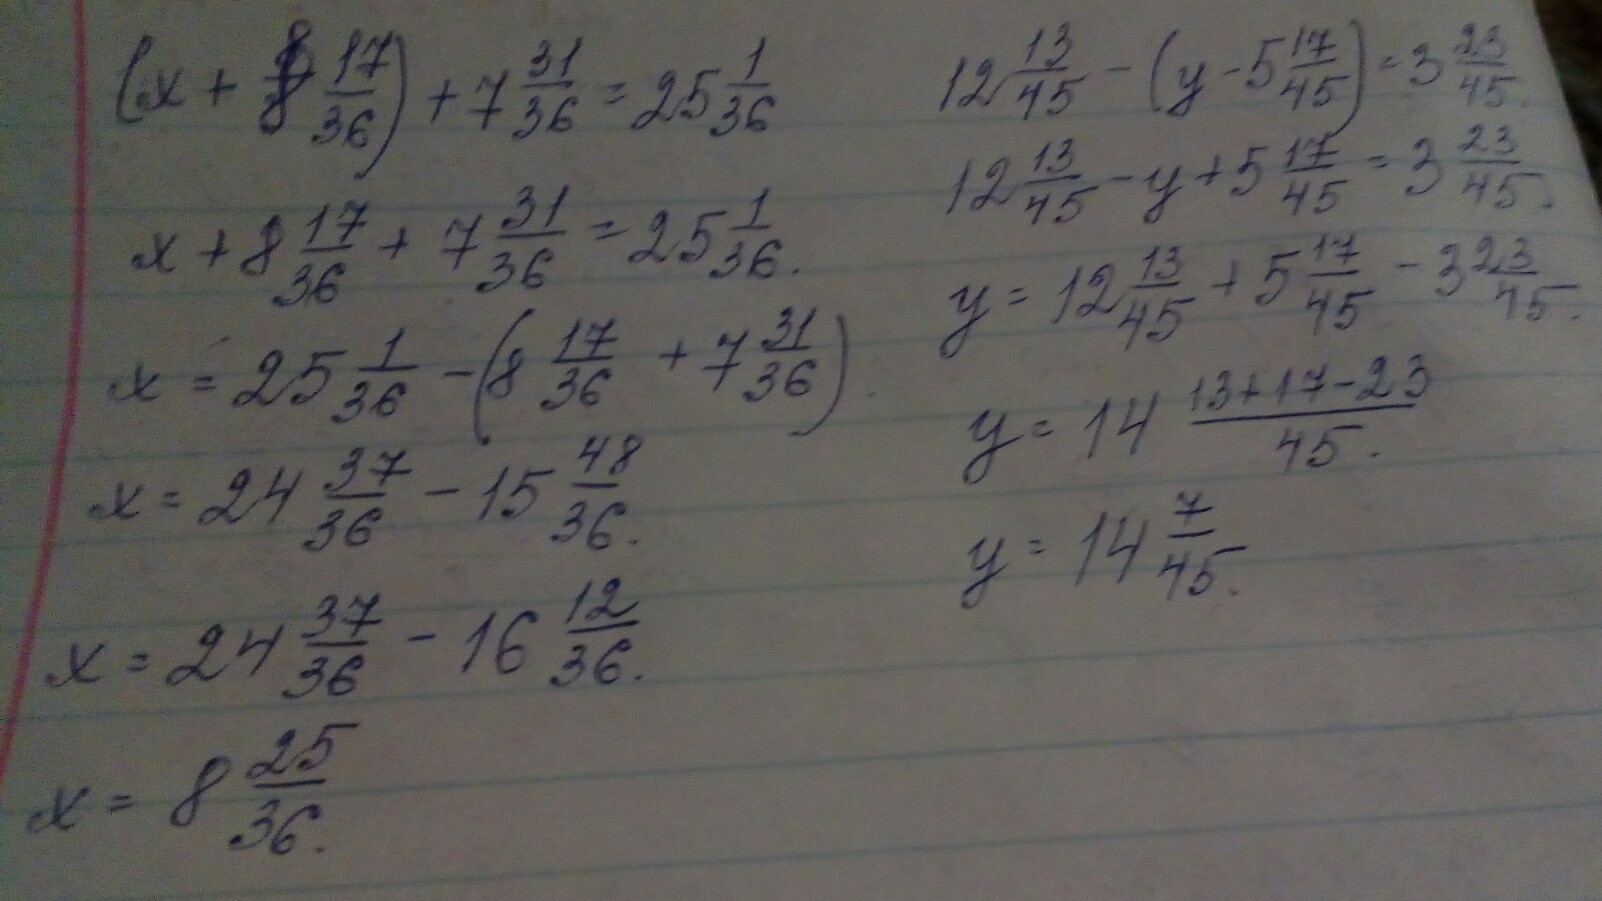 Y 45 1. 17-Х=8. Реши уравнение x + 8 7 17/36 + 31 36. Решение уравнения с комментированием. X 8 17/36 7 31/36 25 1/36.